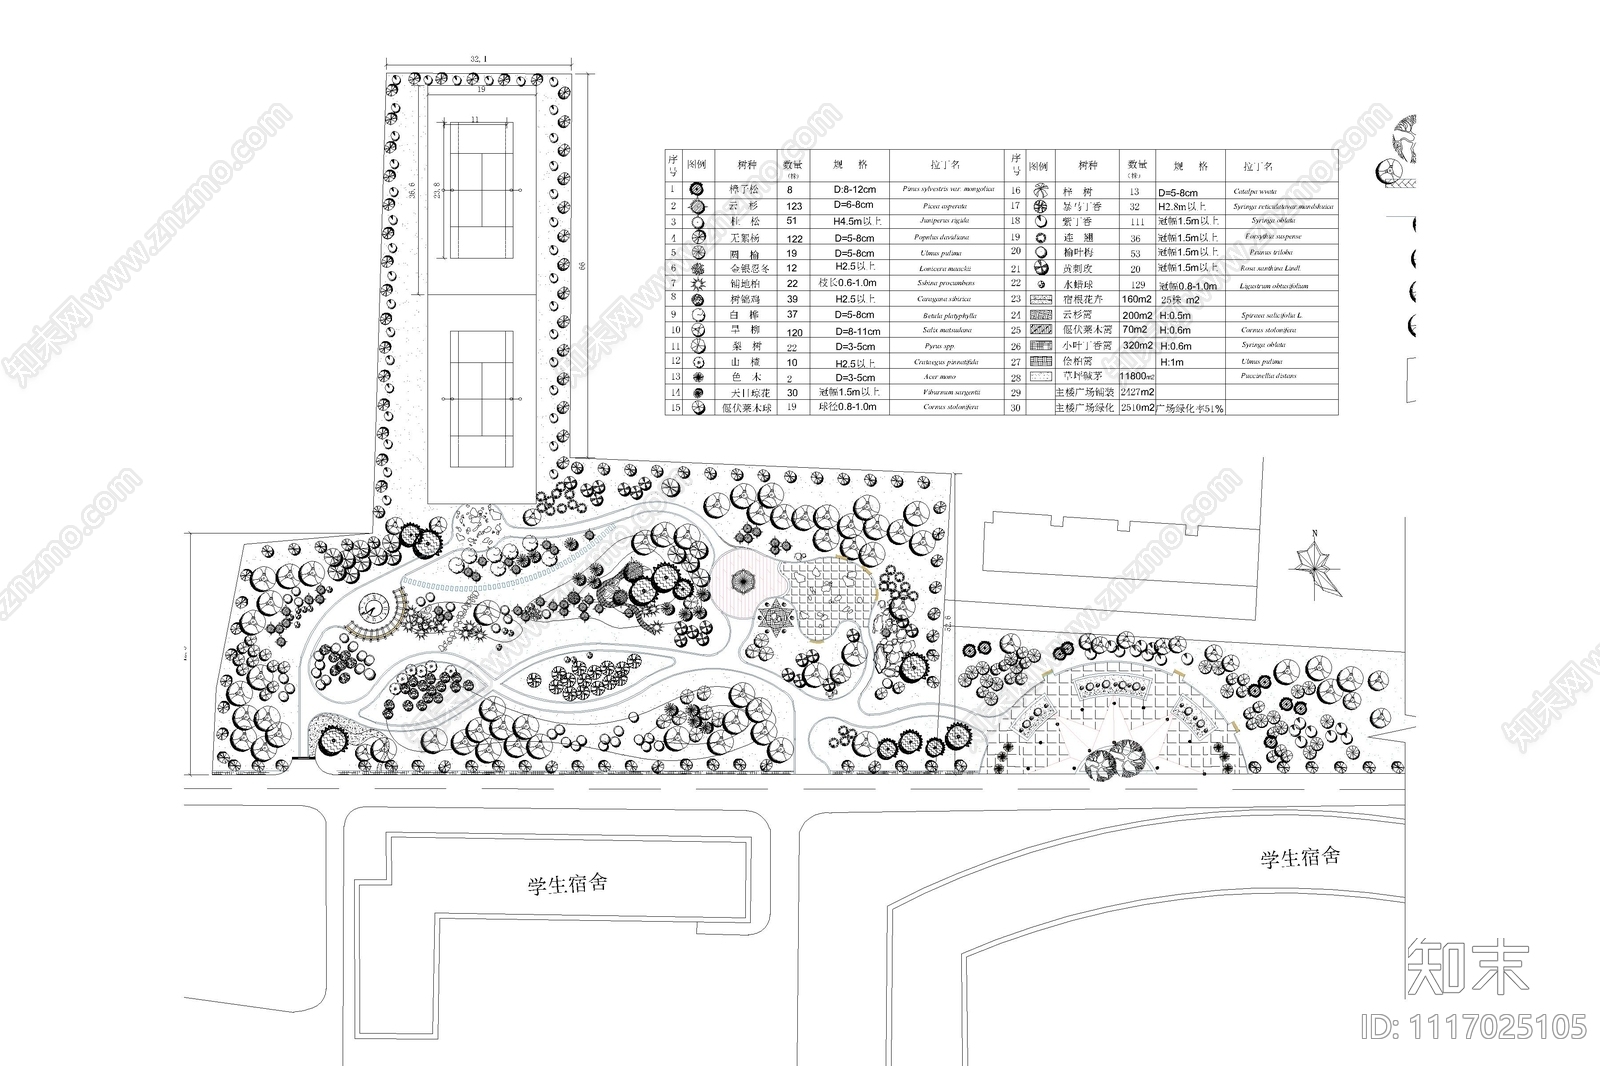 校园广场绿化设计平面图施工图施工图下载【ID:1117025105】